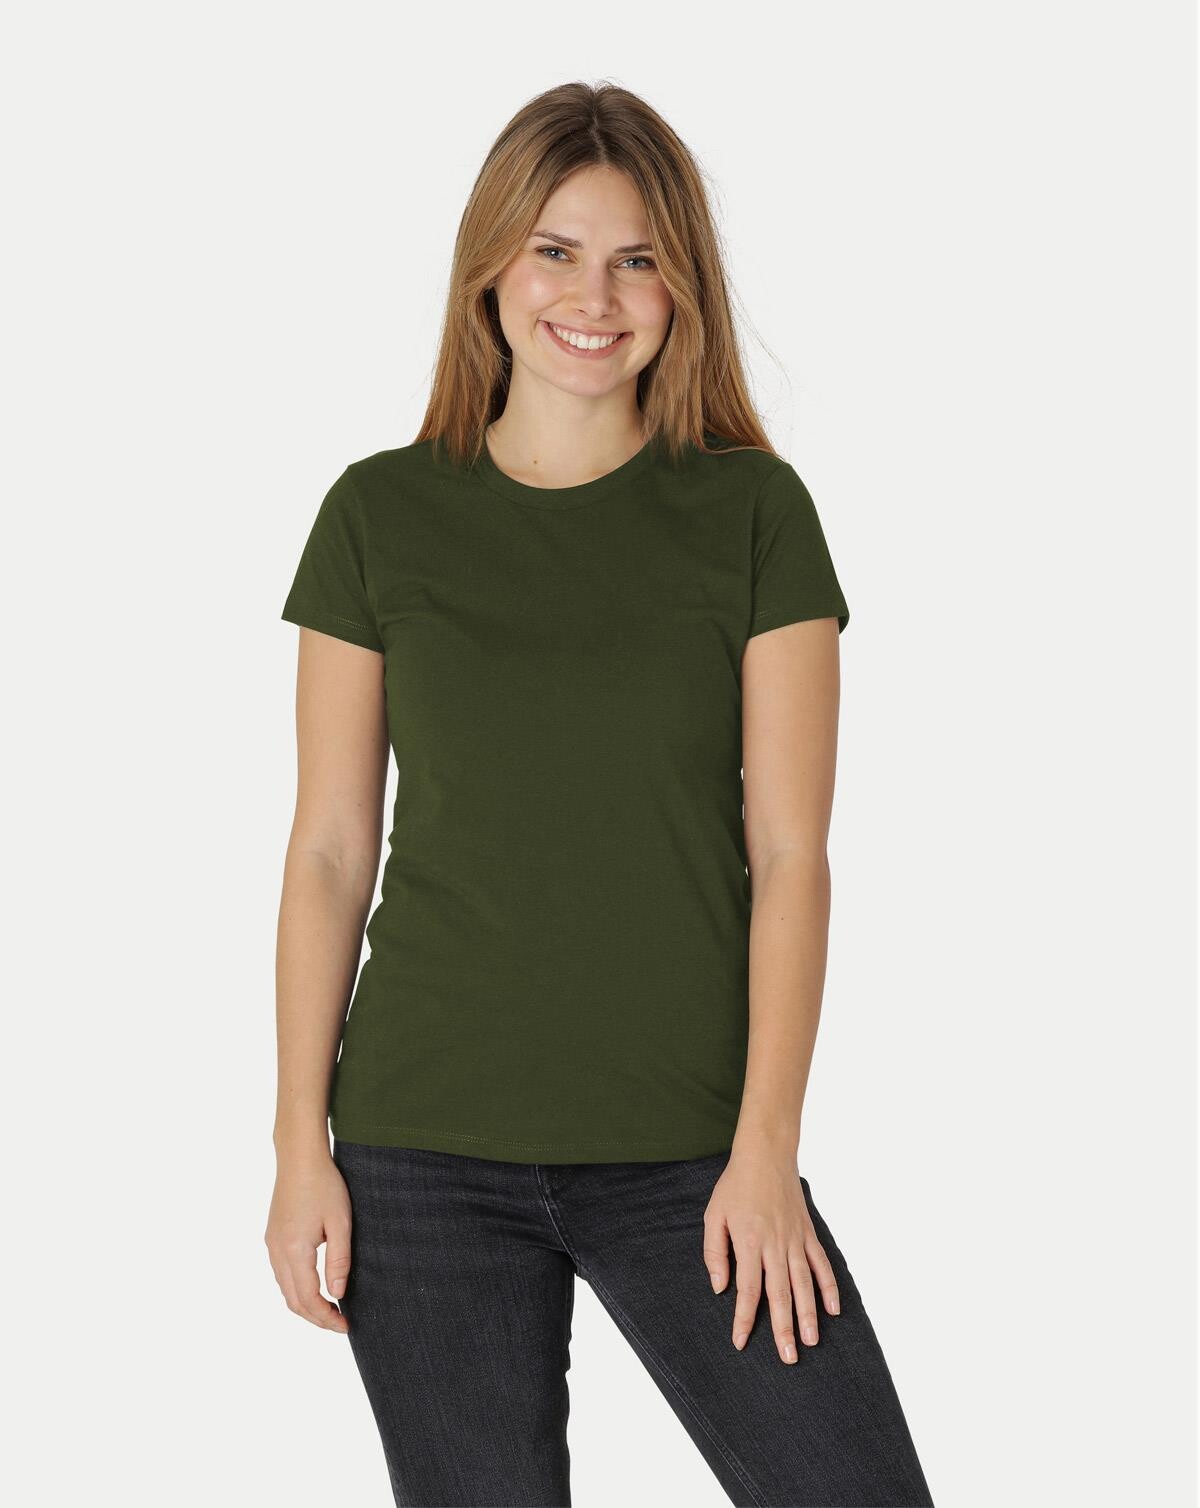 Neutral Økologisk Dame Tætsiddende T-Shirt (Oliven, XS)